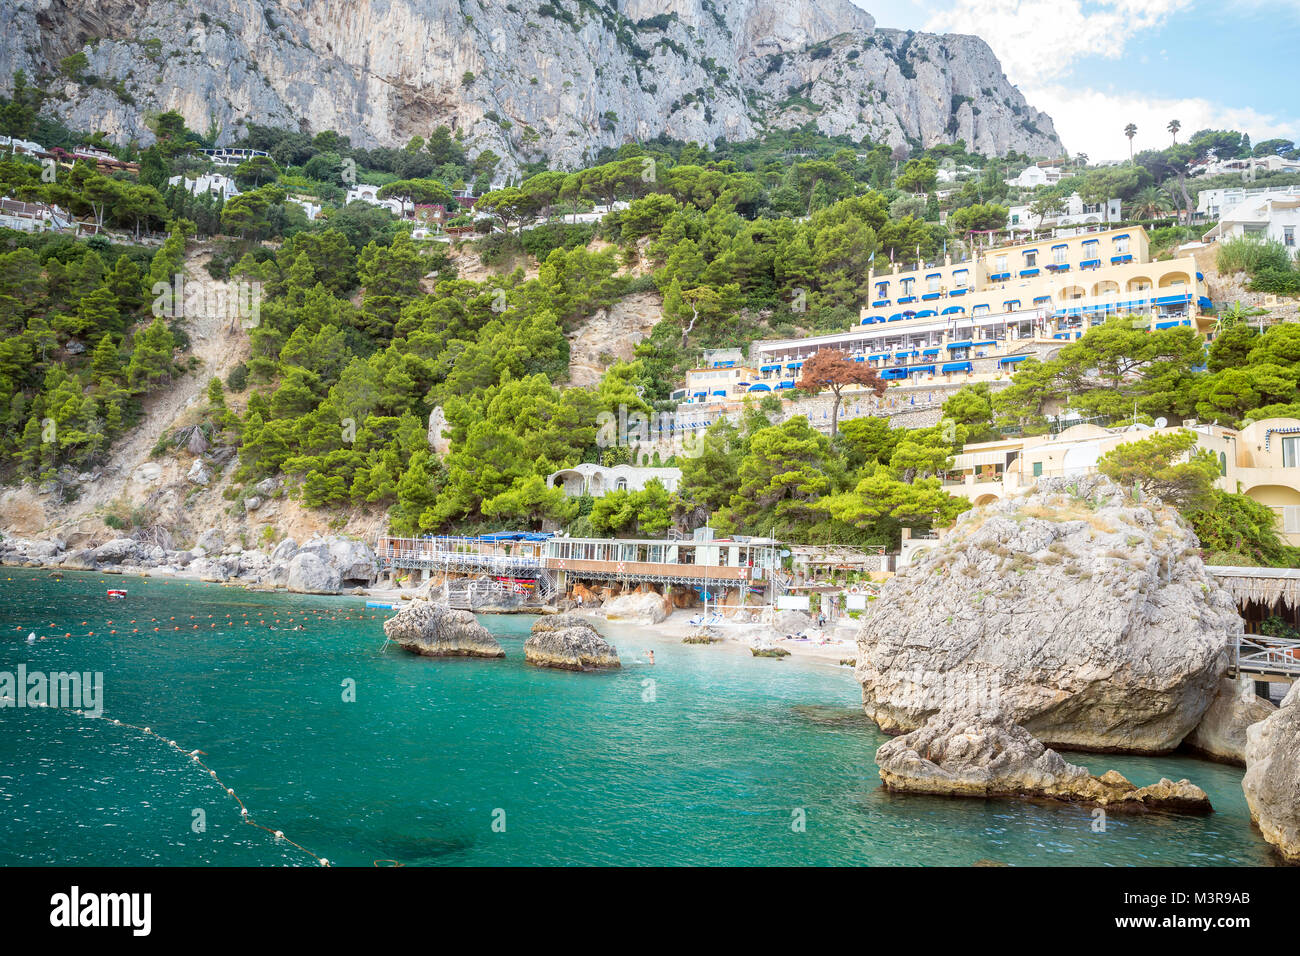 La spiaggia di Marina Piccola resort sull' isola di Capri in Italia Foto Stock